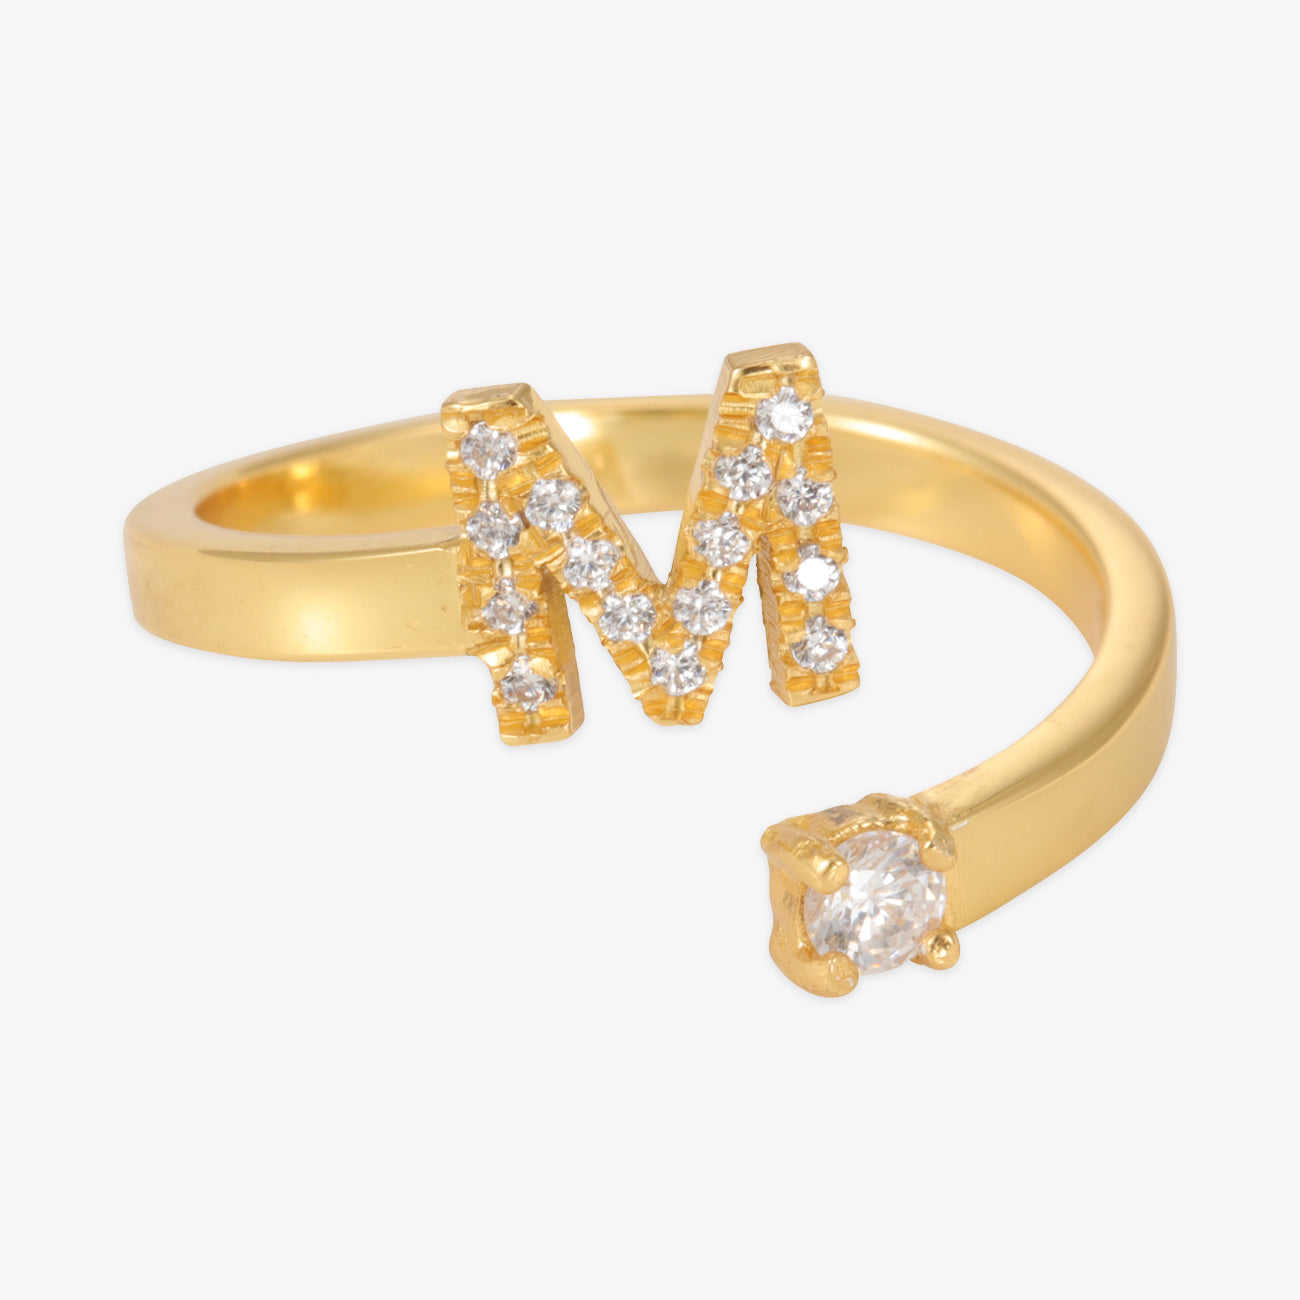 Prekrasno personalizirano prstenje - simbol vas